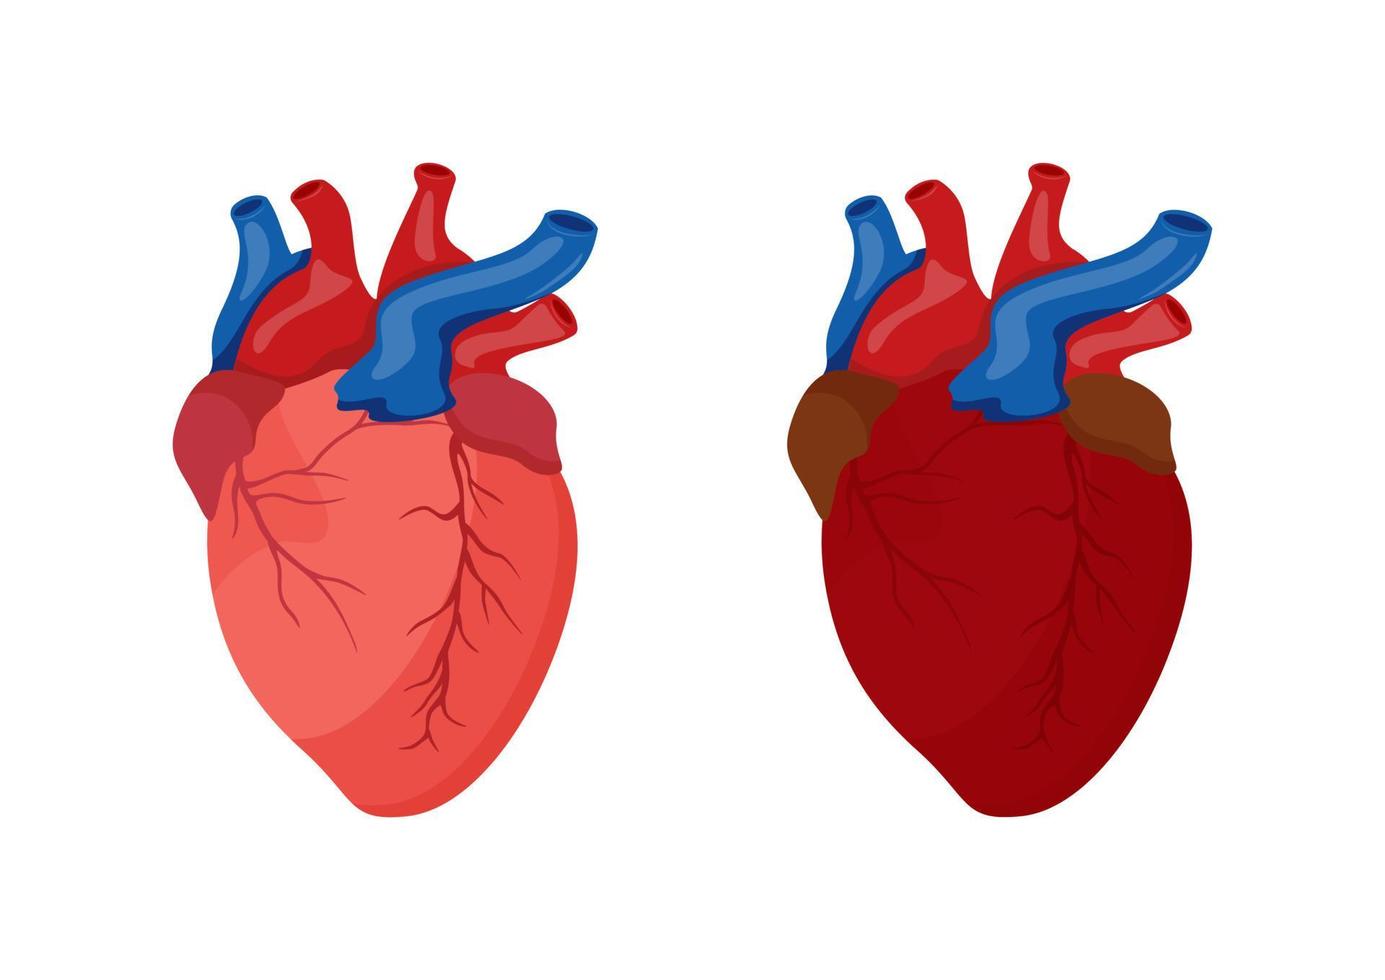 conception de dessin animé de coeur humain. illustration vectorielle du coeur humain isolé sur fond blanc vecteur